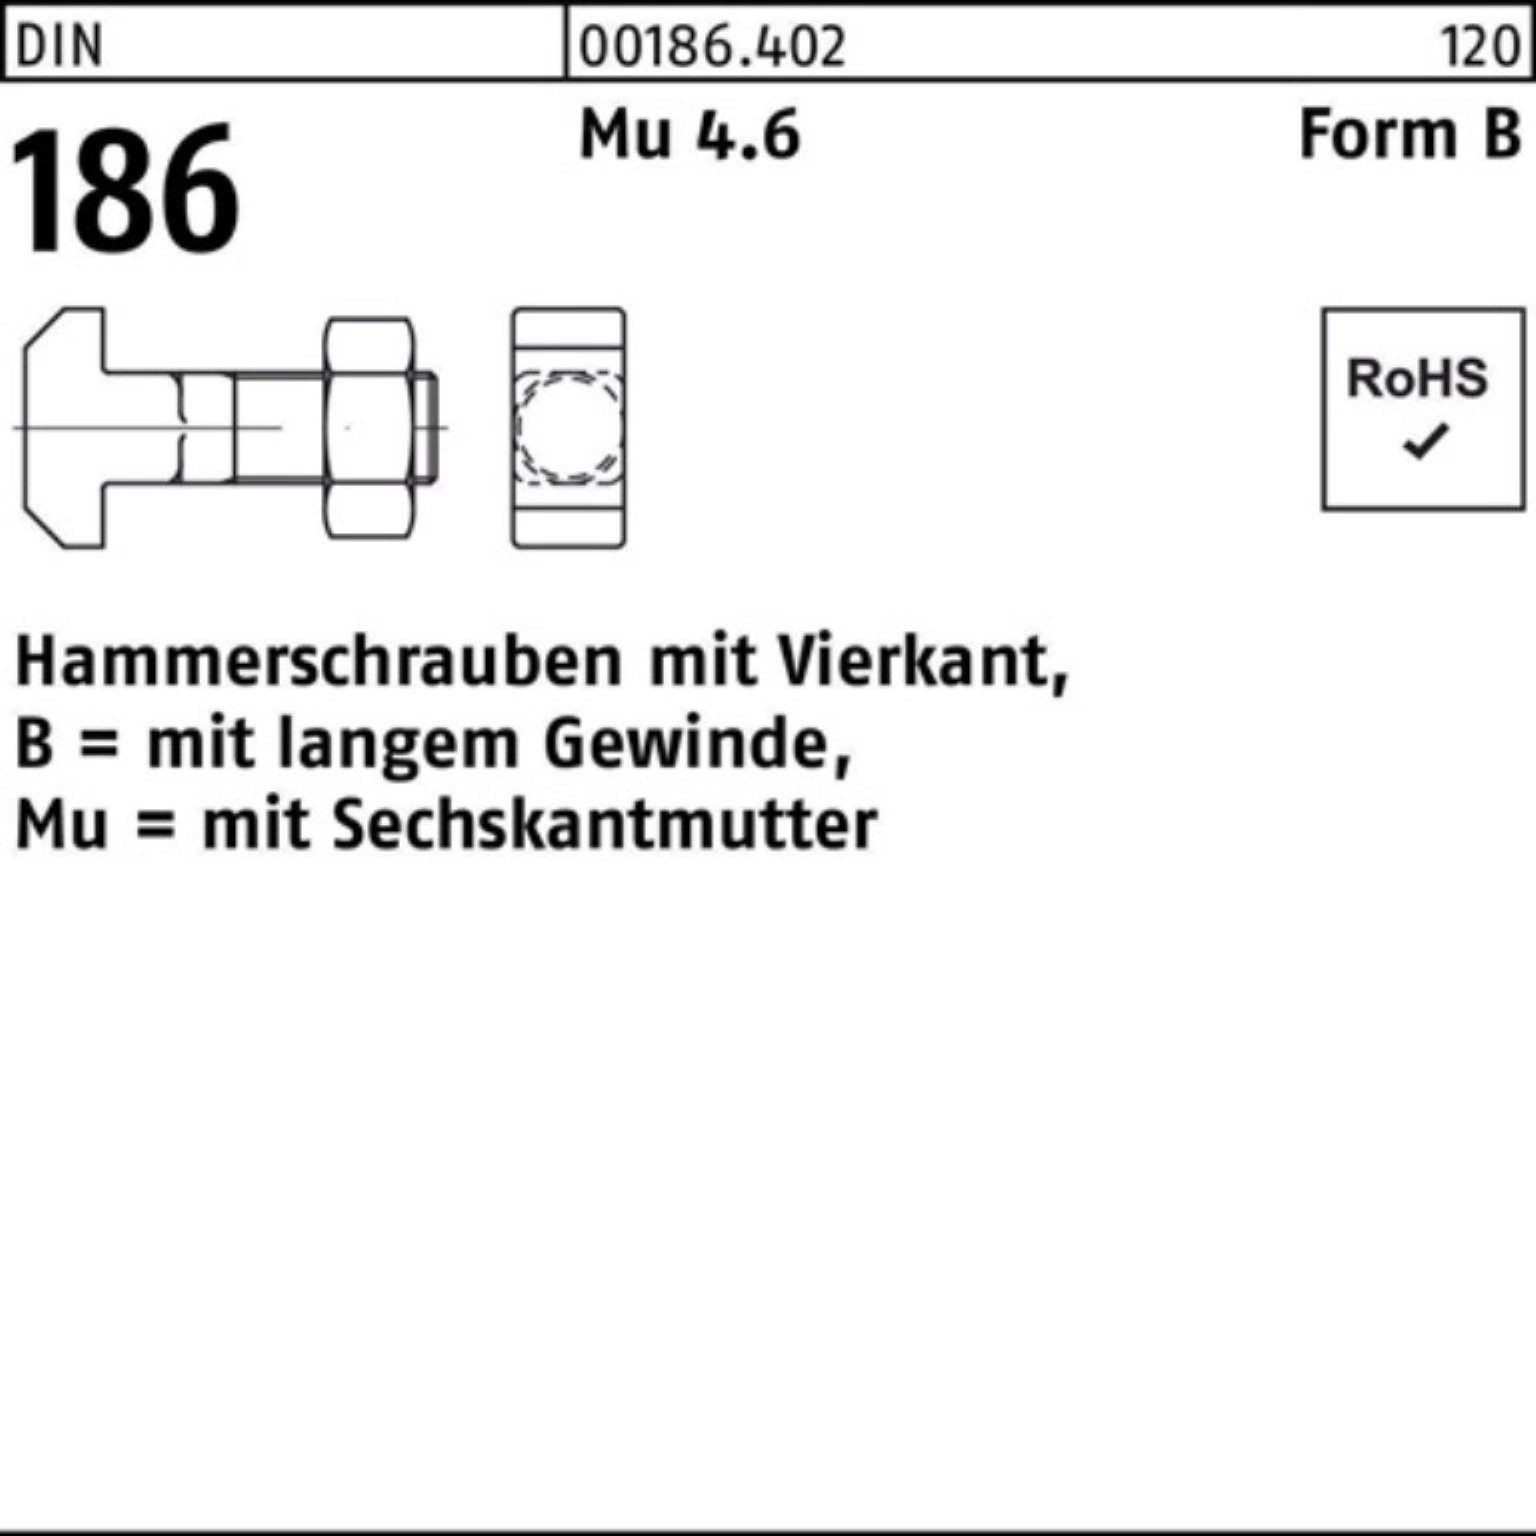 Vierkant DIN 100er 186 FormB Hammerschraube Schraube Reyher 6-ktmutter 24x 100 Pack BM